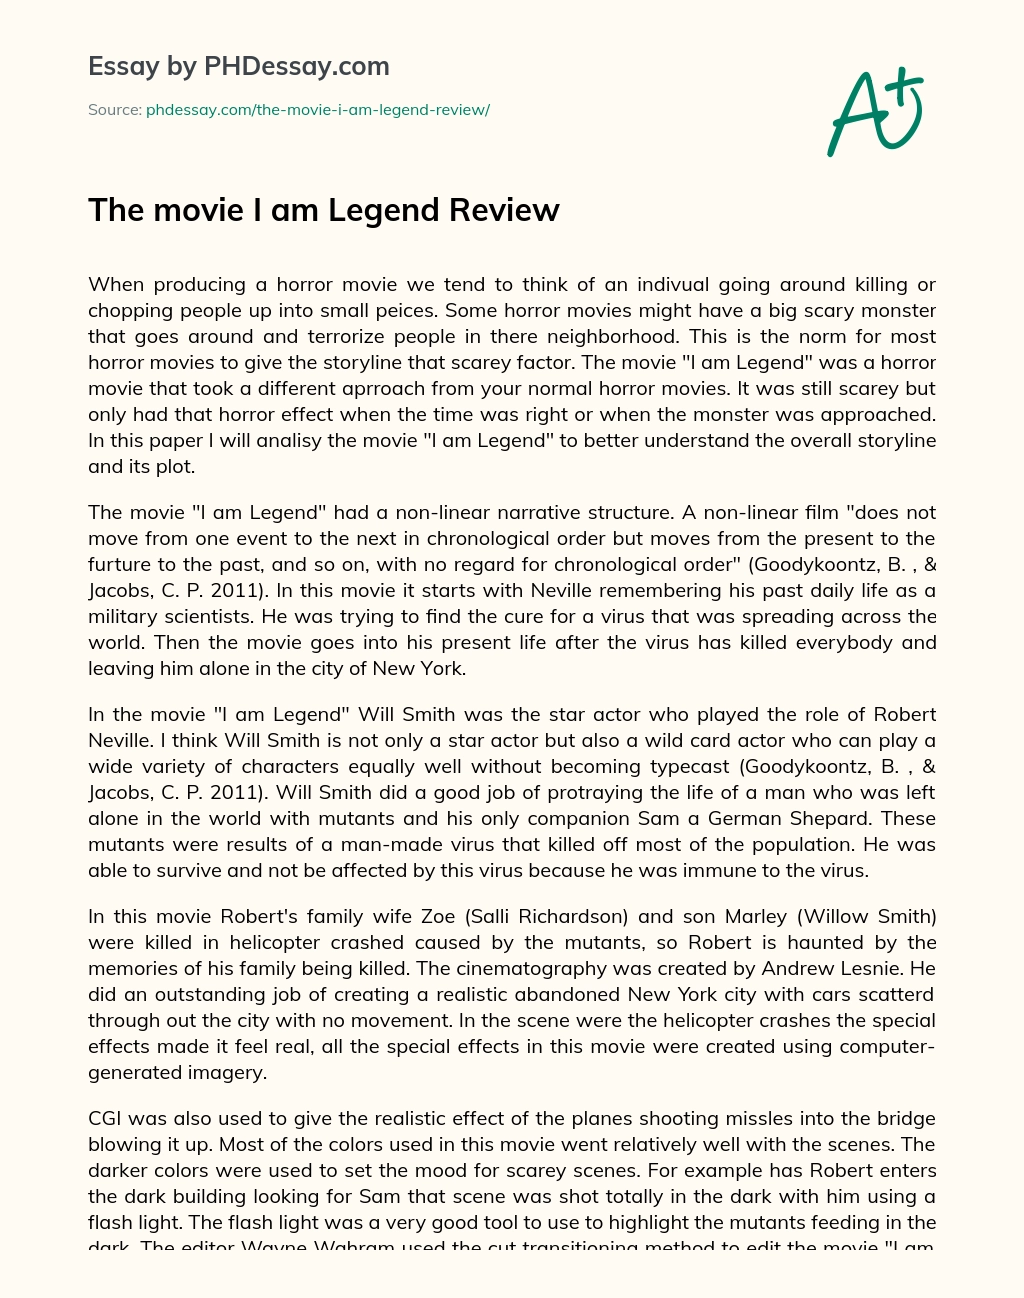 The Movie I Am Legend Review Phdessay Com